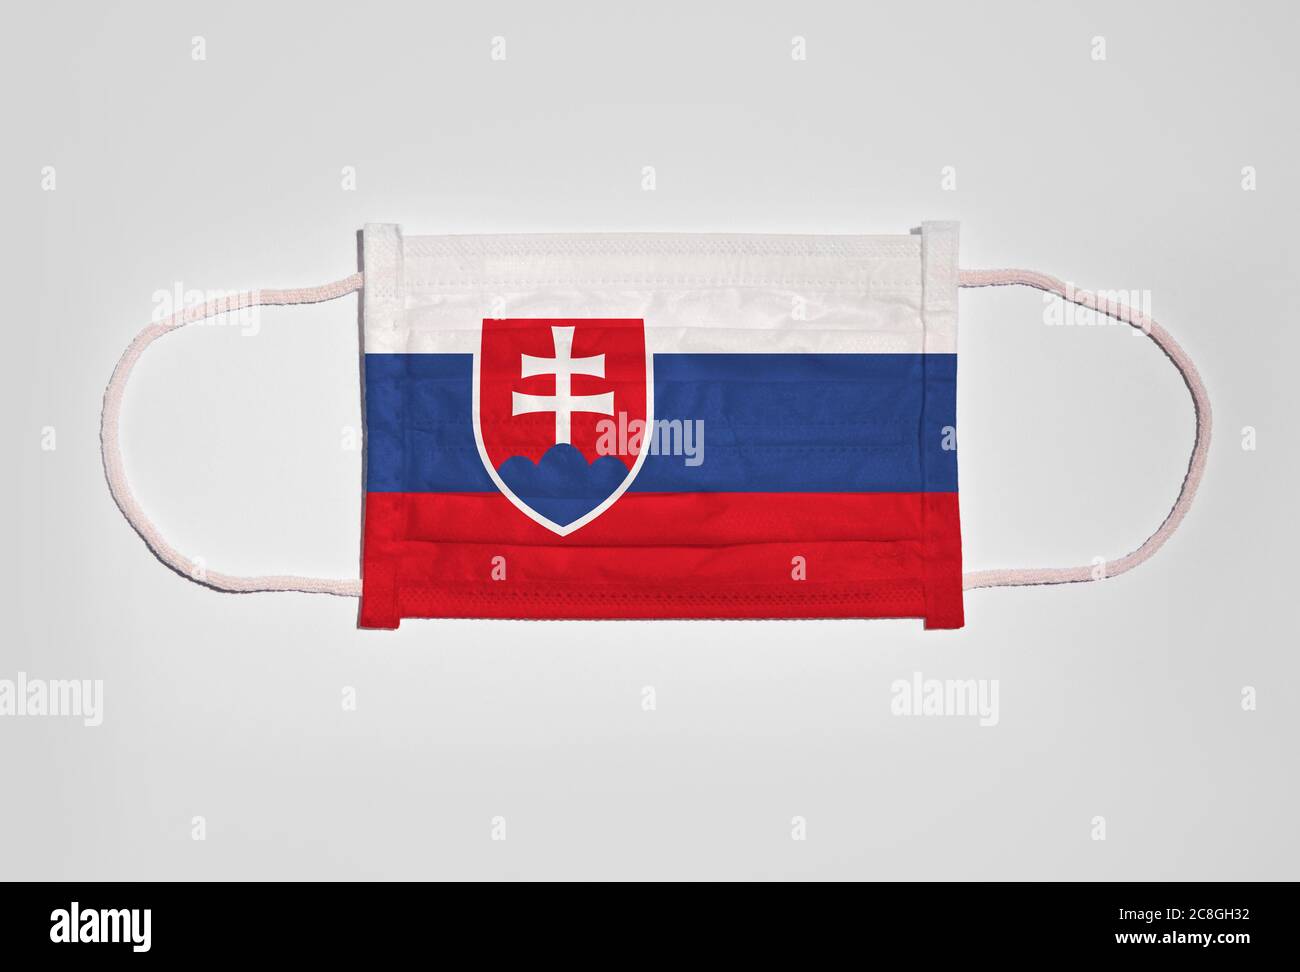 Symbolbild Corona Krise, Mundschutz, Atemmaske, Mund- und Nasenschutz mit Flagge der Slowakei, weißer Hintergrund Stockfoto